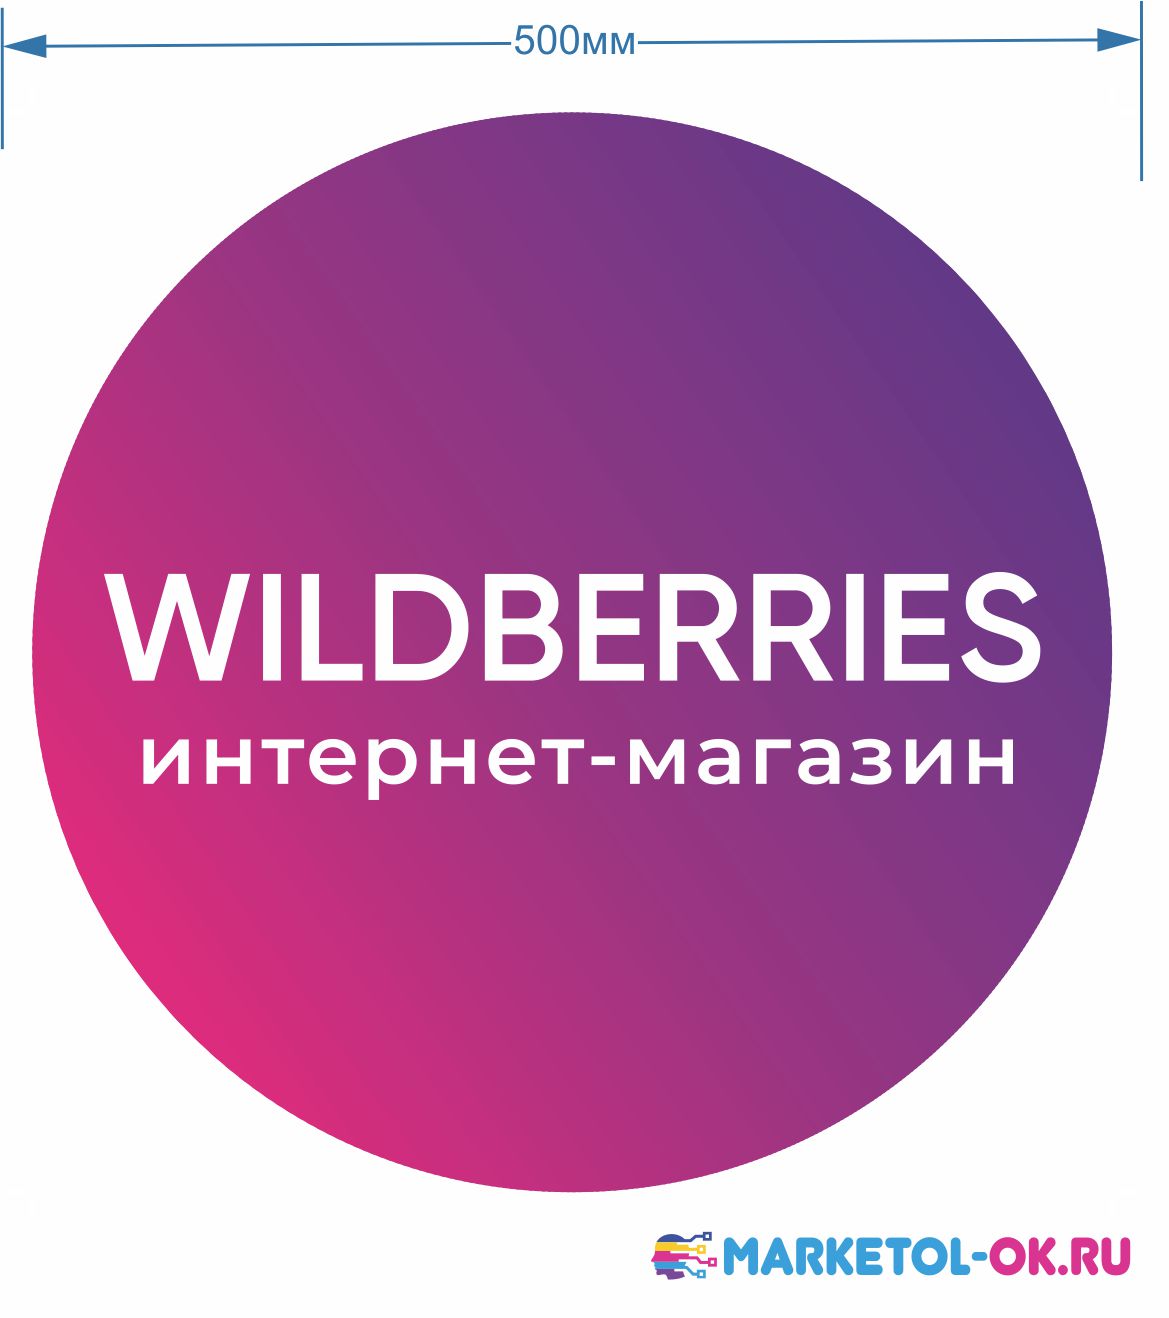 wildberries вывеска круглая панель-кронштейн изготовление. Брендирование ПВЗ Валберис по брендбуку.